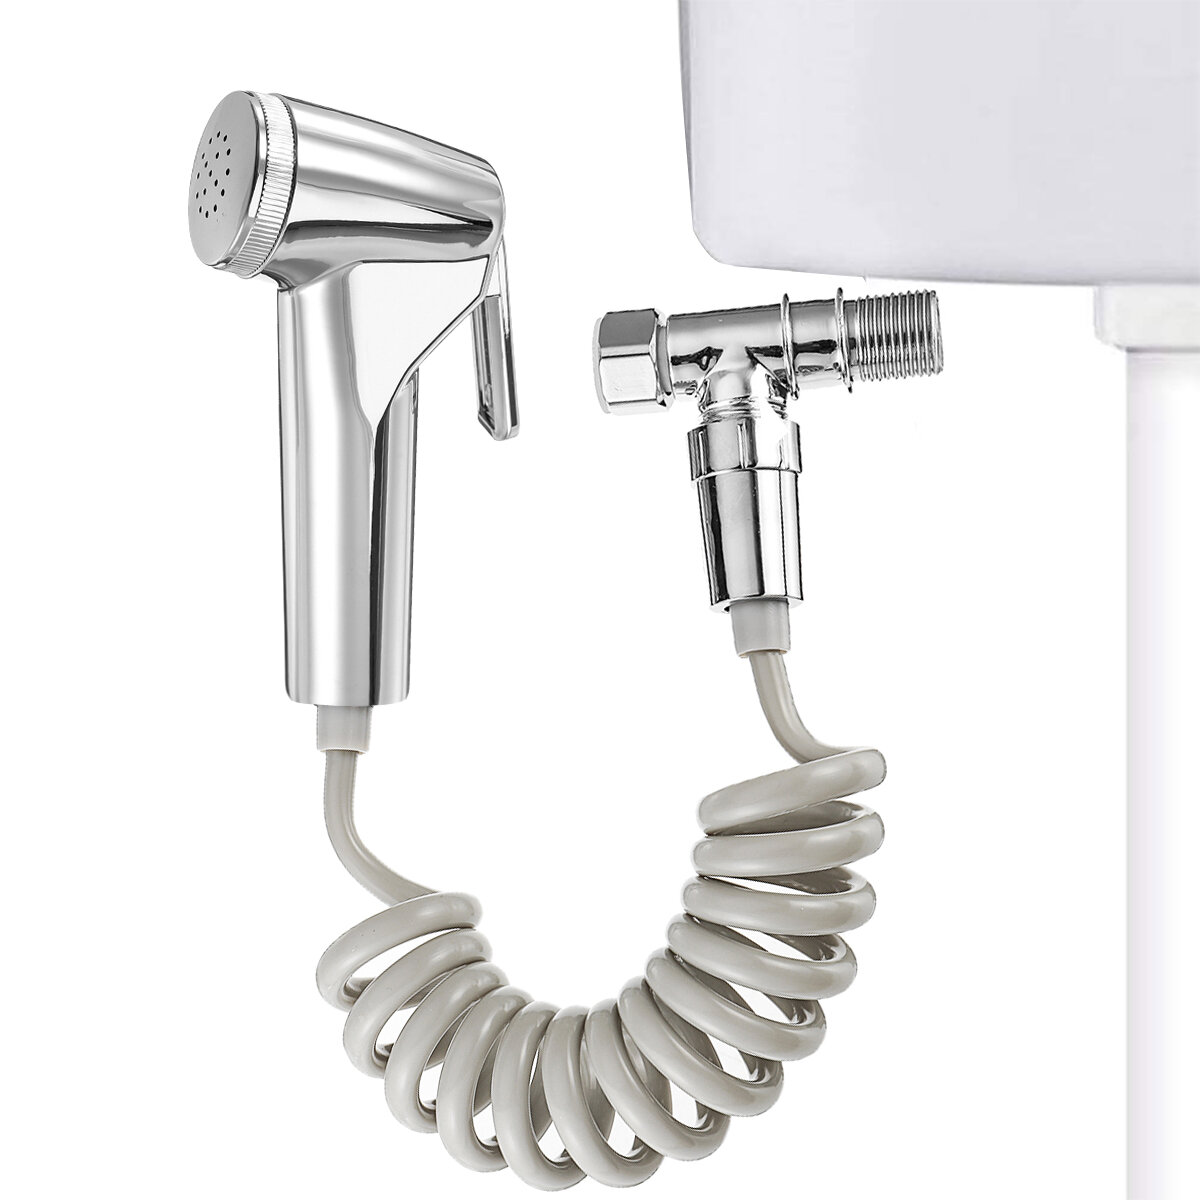 ABS draagbare handheld bidetspuitset voor toilet Intrekbare veerslangadapter Gratis montagebeugel Re